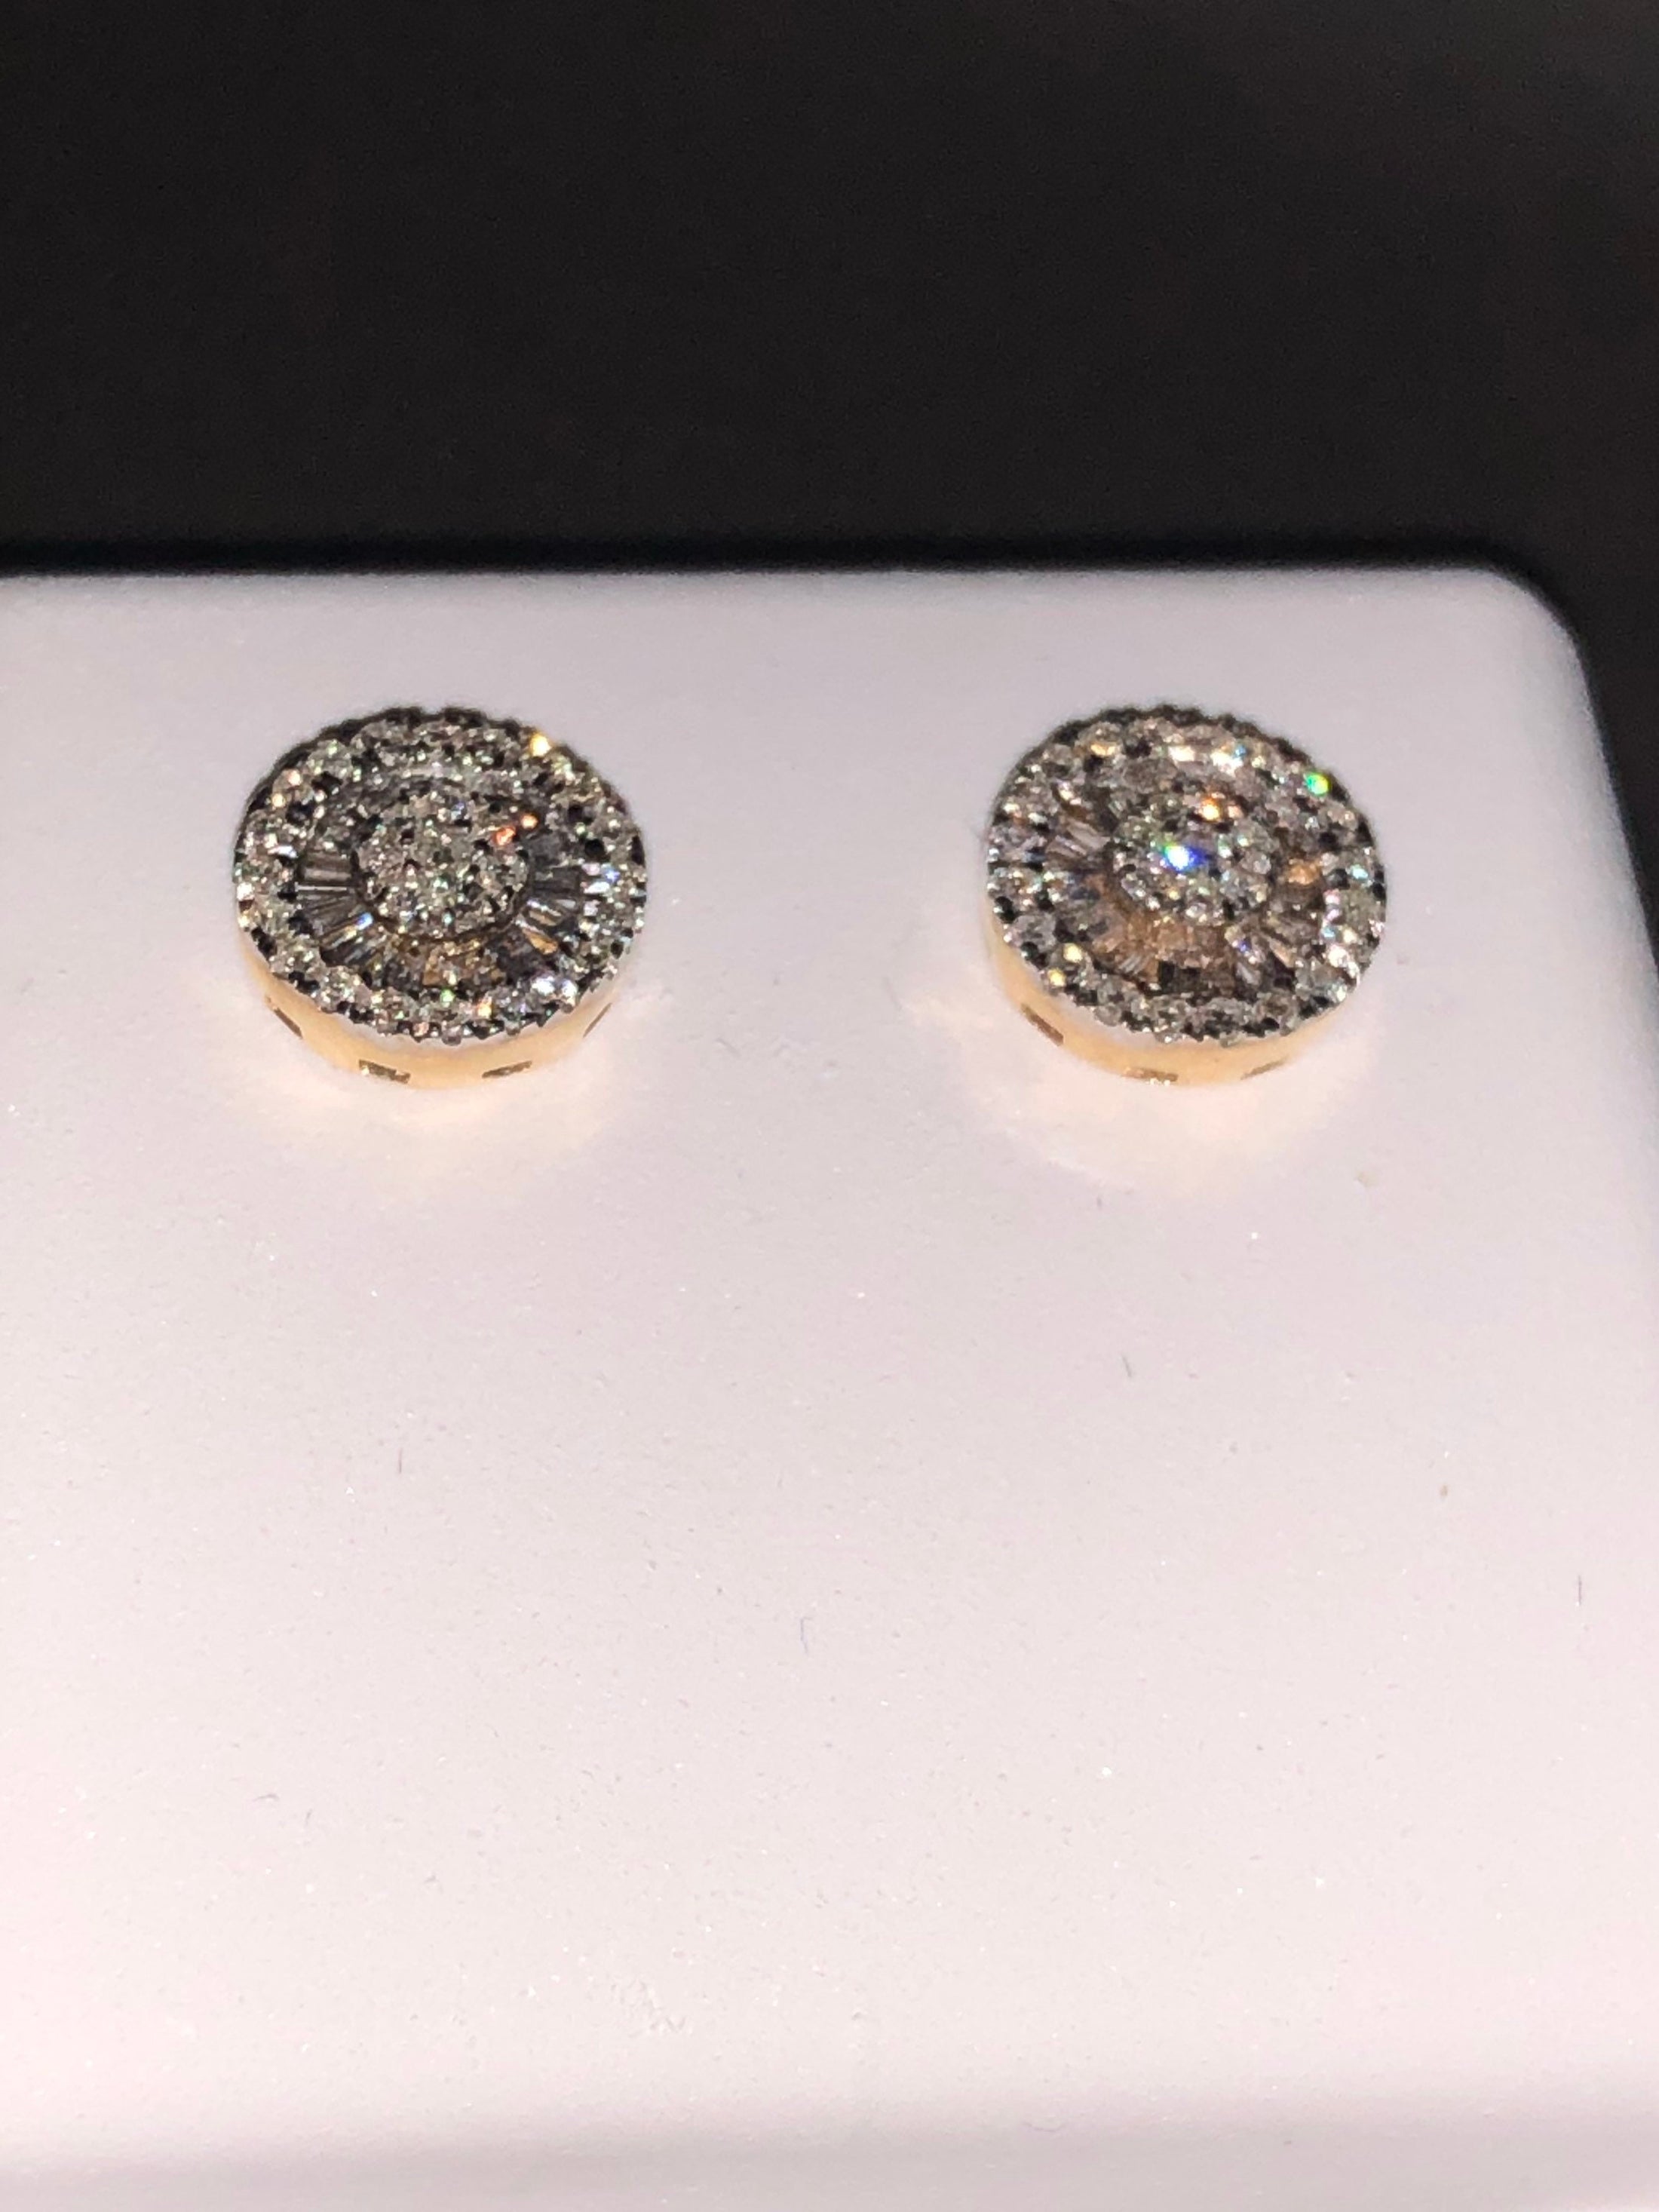 Real Diamond Earring | Stunning Diamond Earring | Diamond Sparkle Stud Earring | 10k Gold Engagement Earrings | Diamond Jewelry Gift For Mom